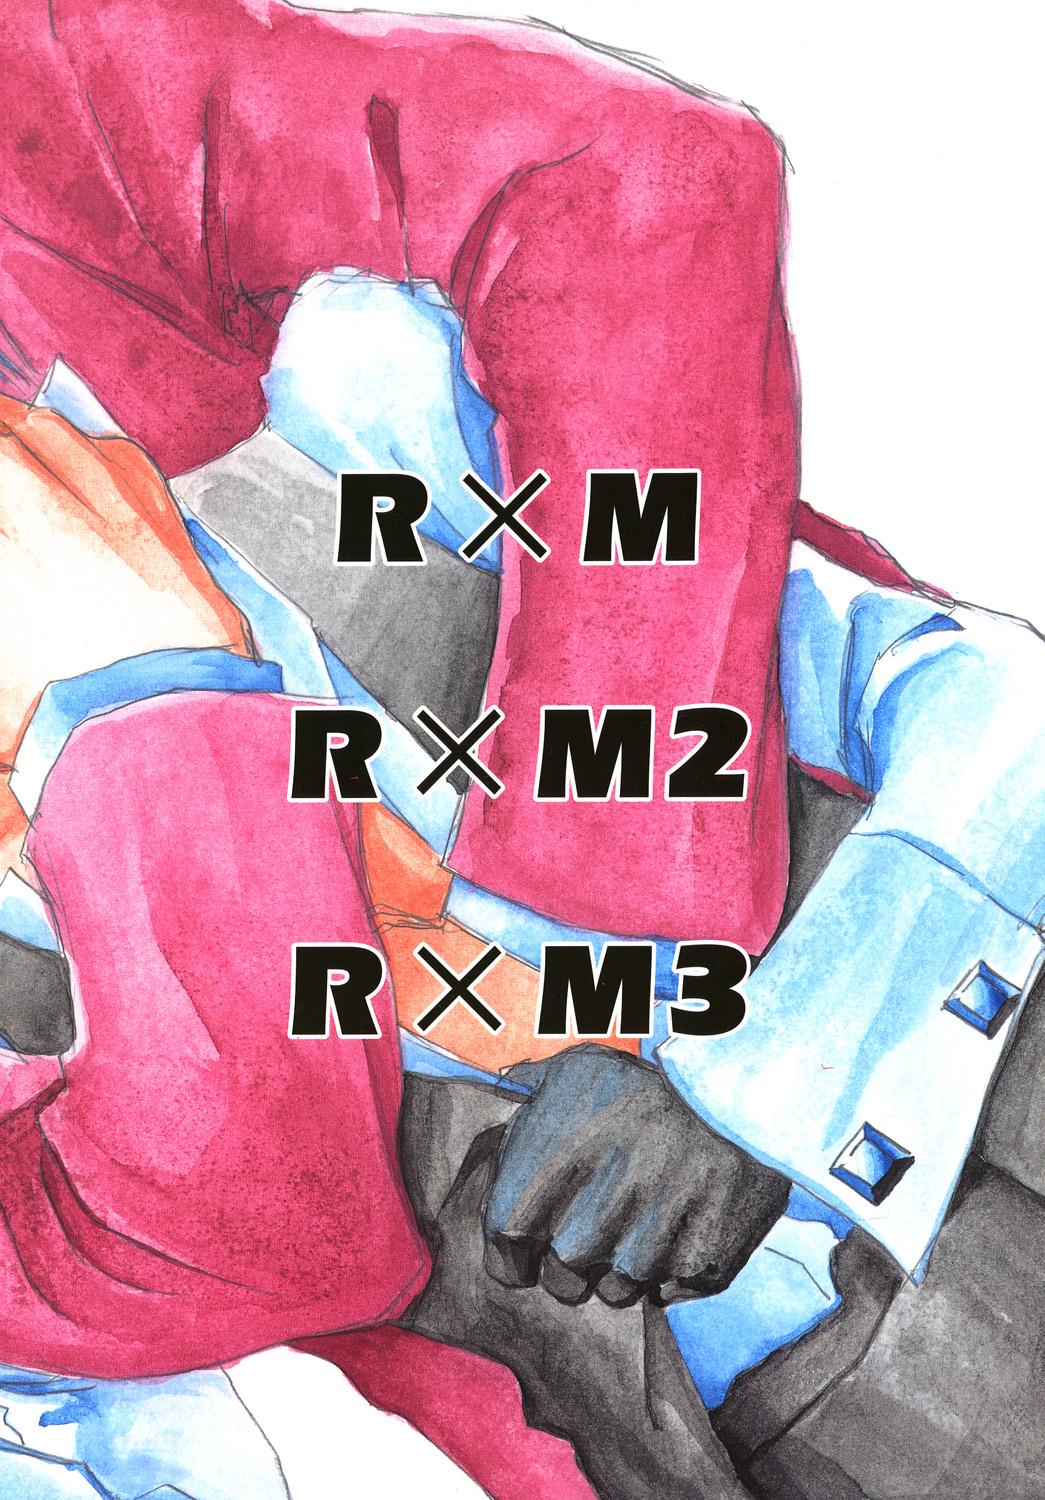 RxM DX 93